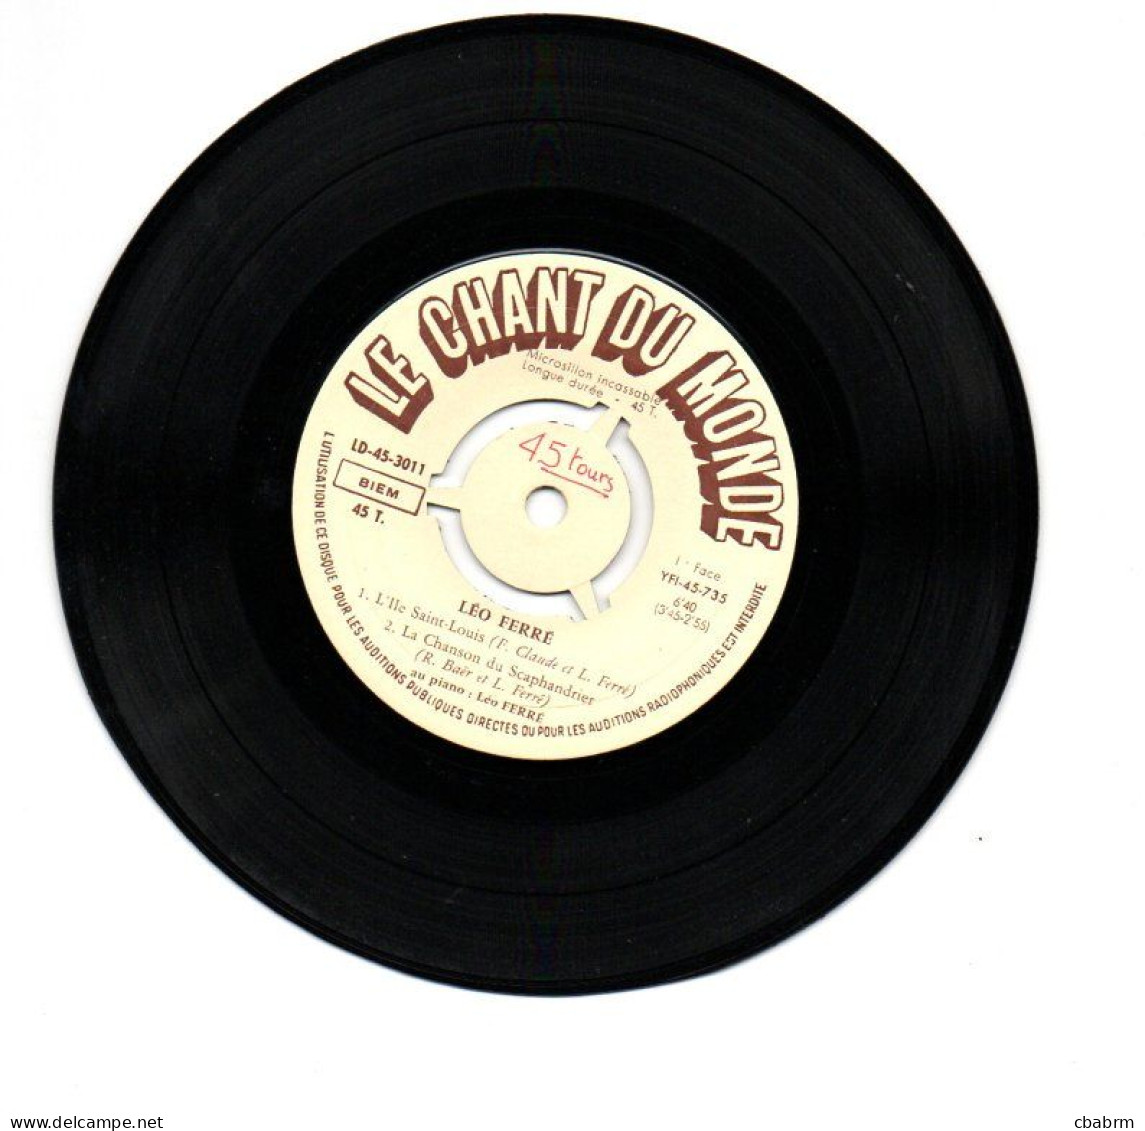 EP 45 TOURS LEO FERRE L'ILE SAINT LOUIS 1956 FRANCE Le Chant Du Monde ‎ 45 3011 - Sonstige - Franz. Chansons